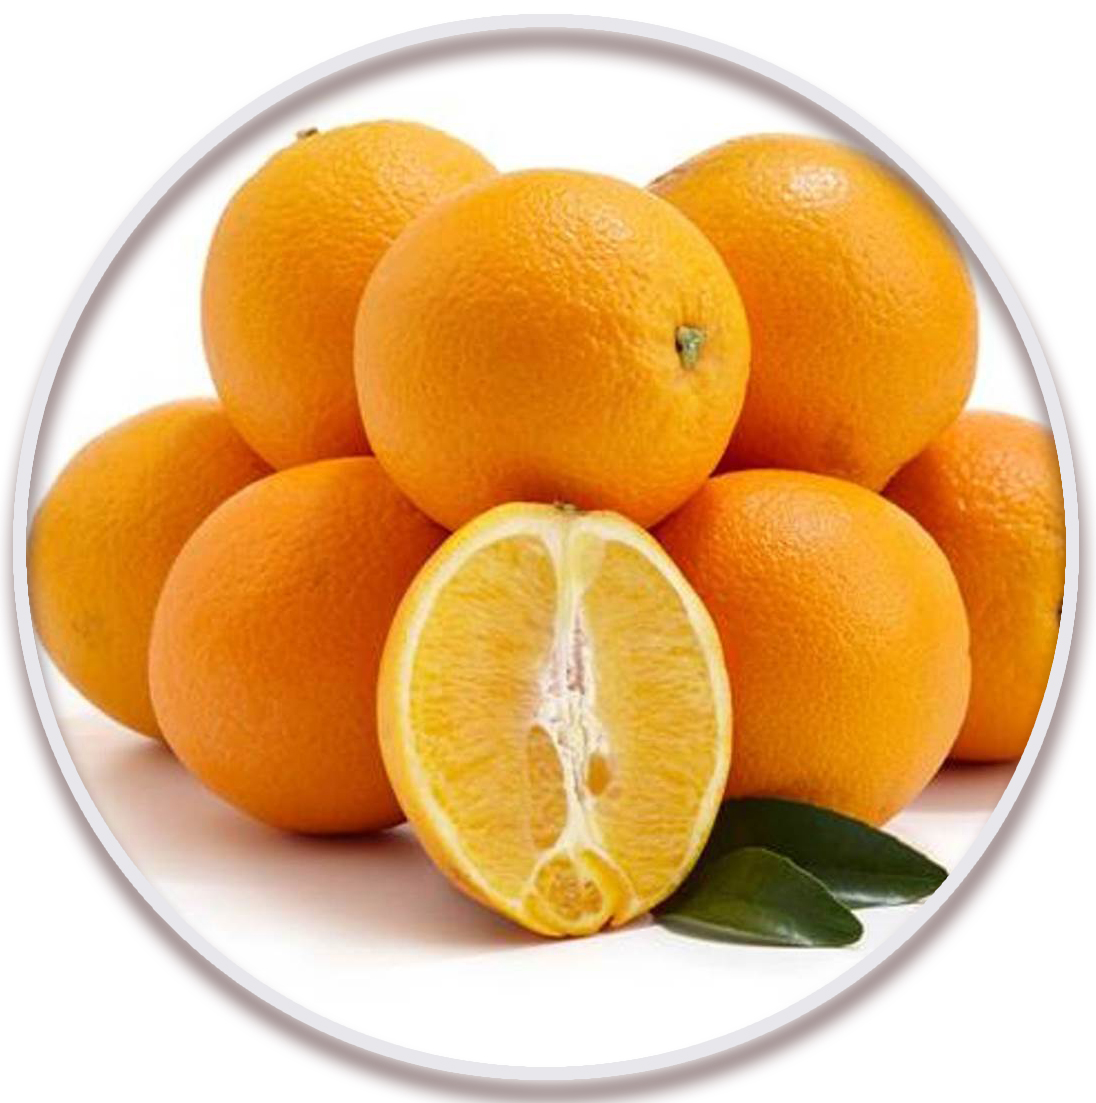 پرتقال شاموتی یا یافا (Shamouti or Jaffa Orange)